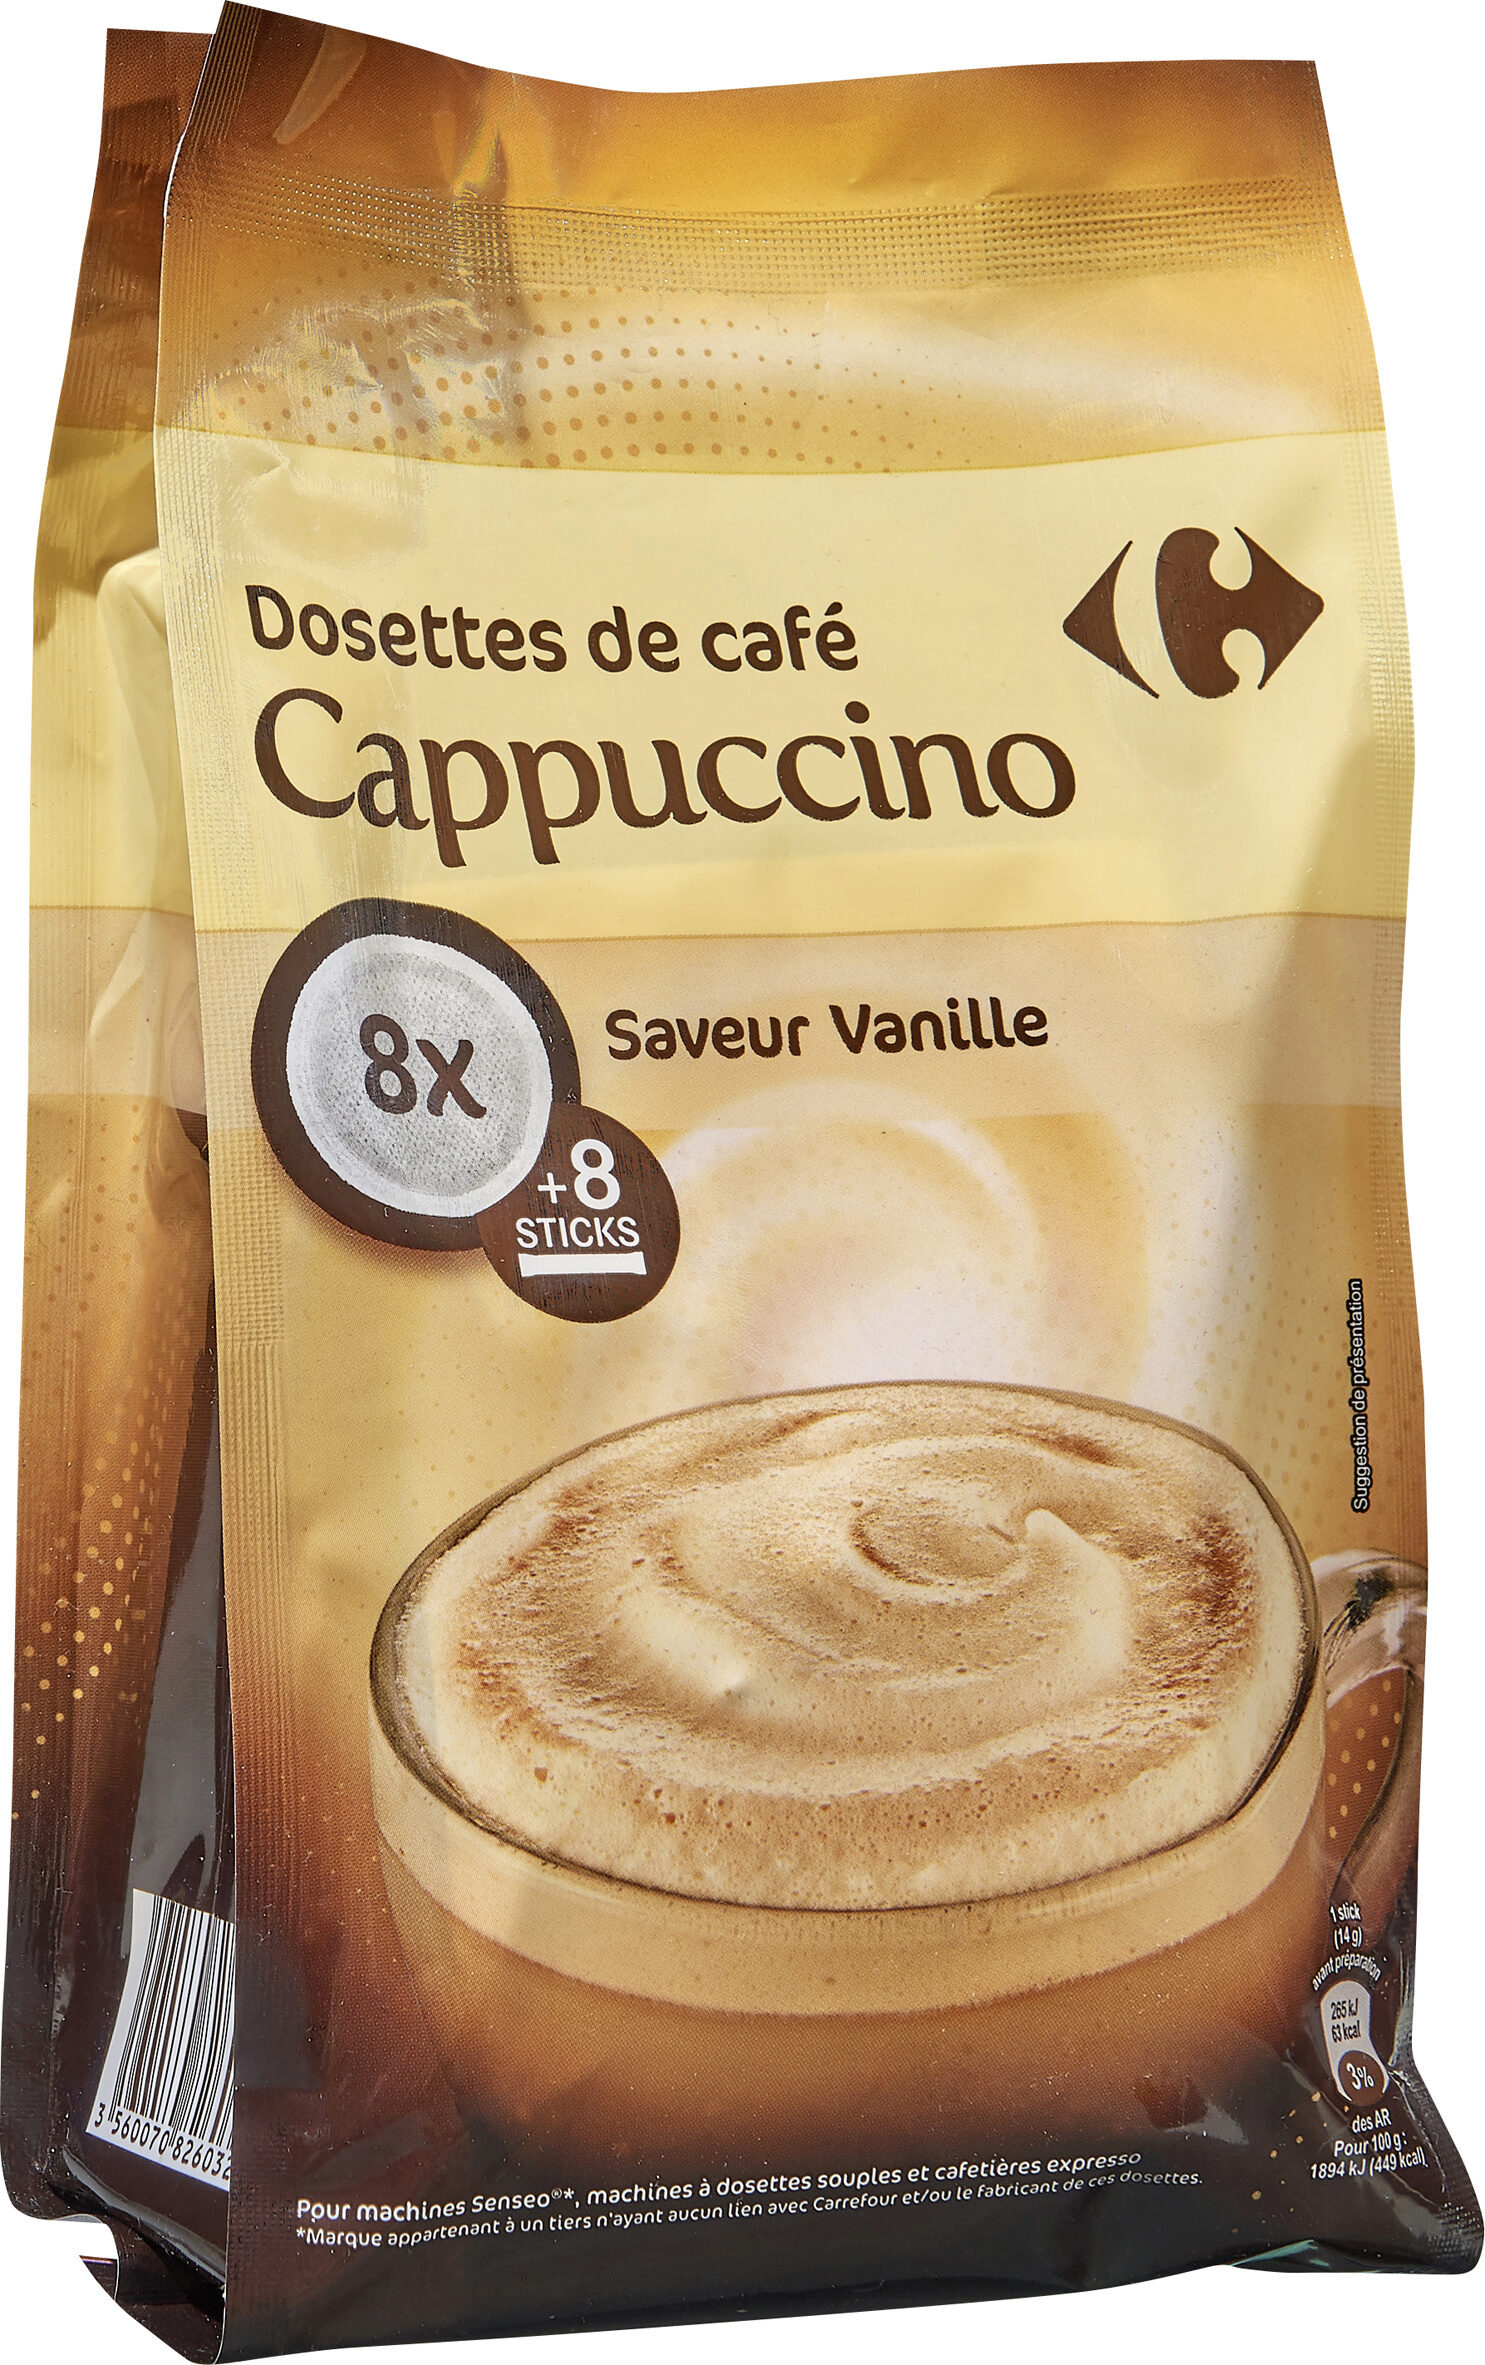 Dosettes de café Cappuccino - saveur vanille - Prodotto - fr